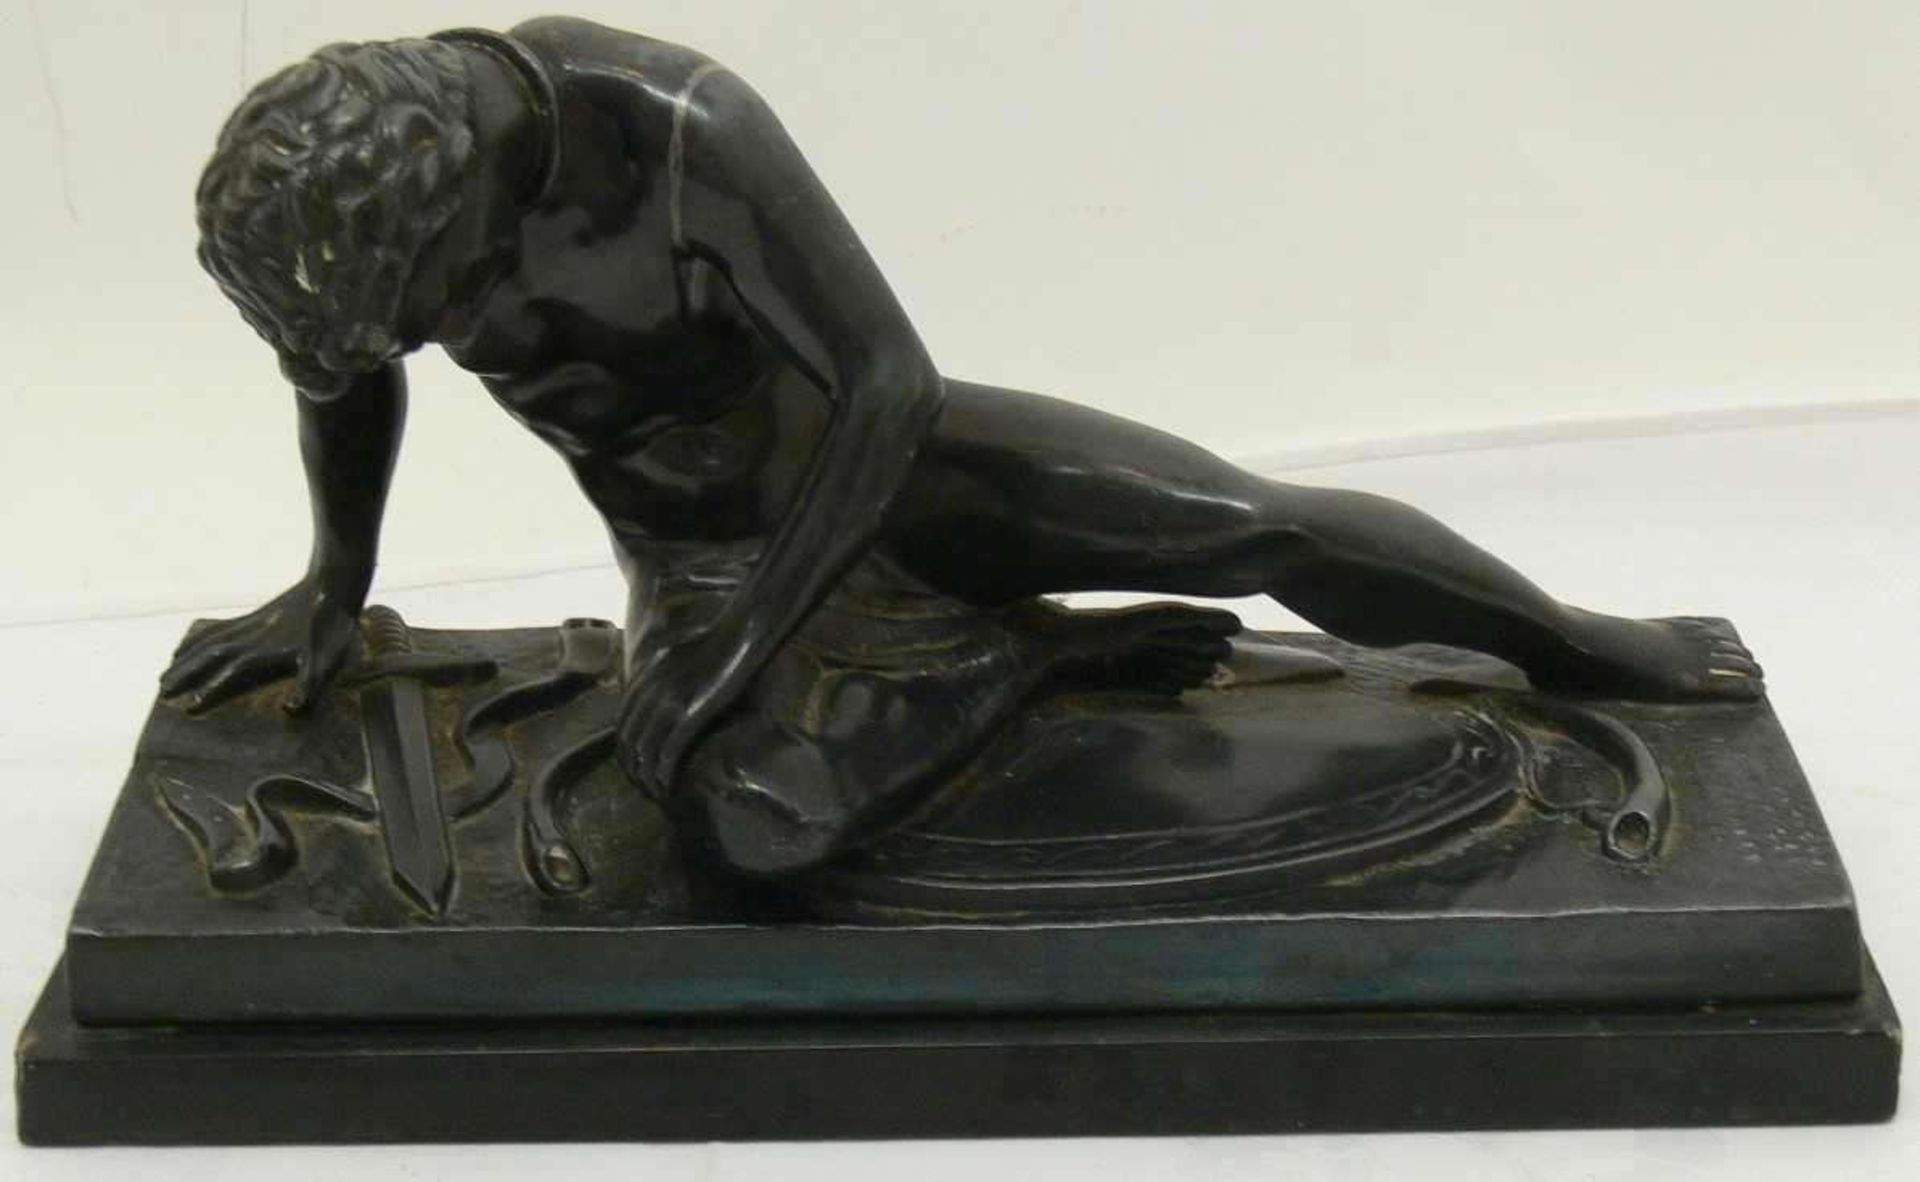 Metallfigur - Skulptur "Nackter Mann" mit 1 Hand abstützend, am Boden liegend 1 Schwert. Ohne